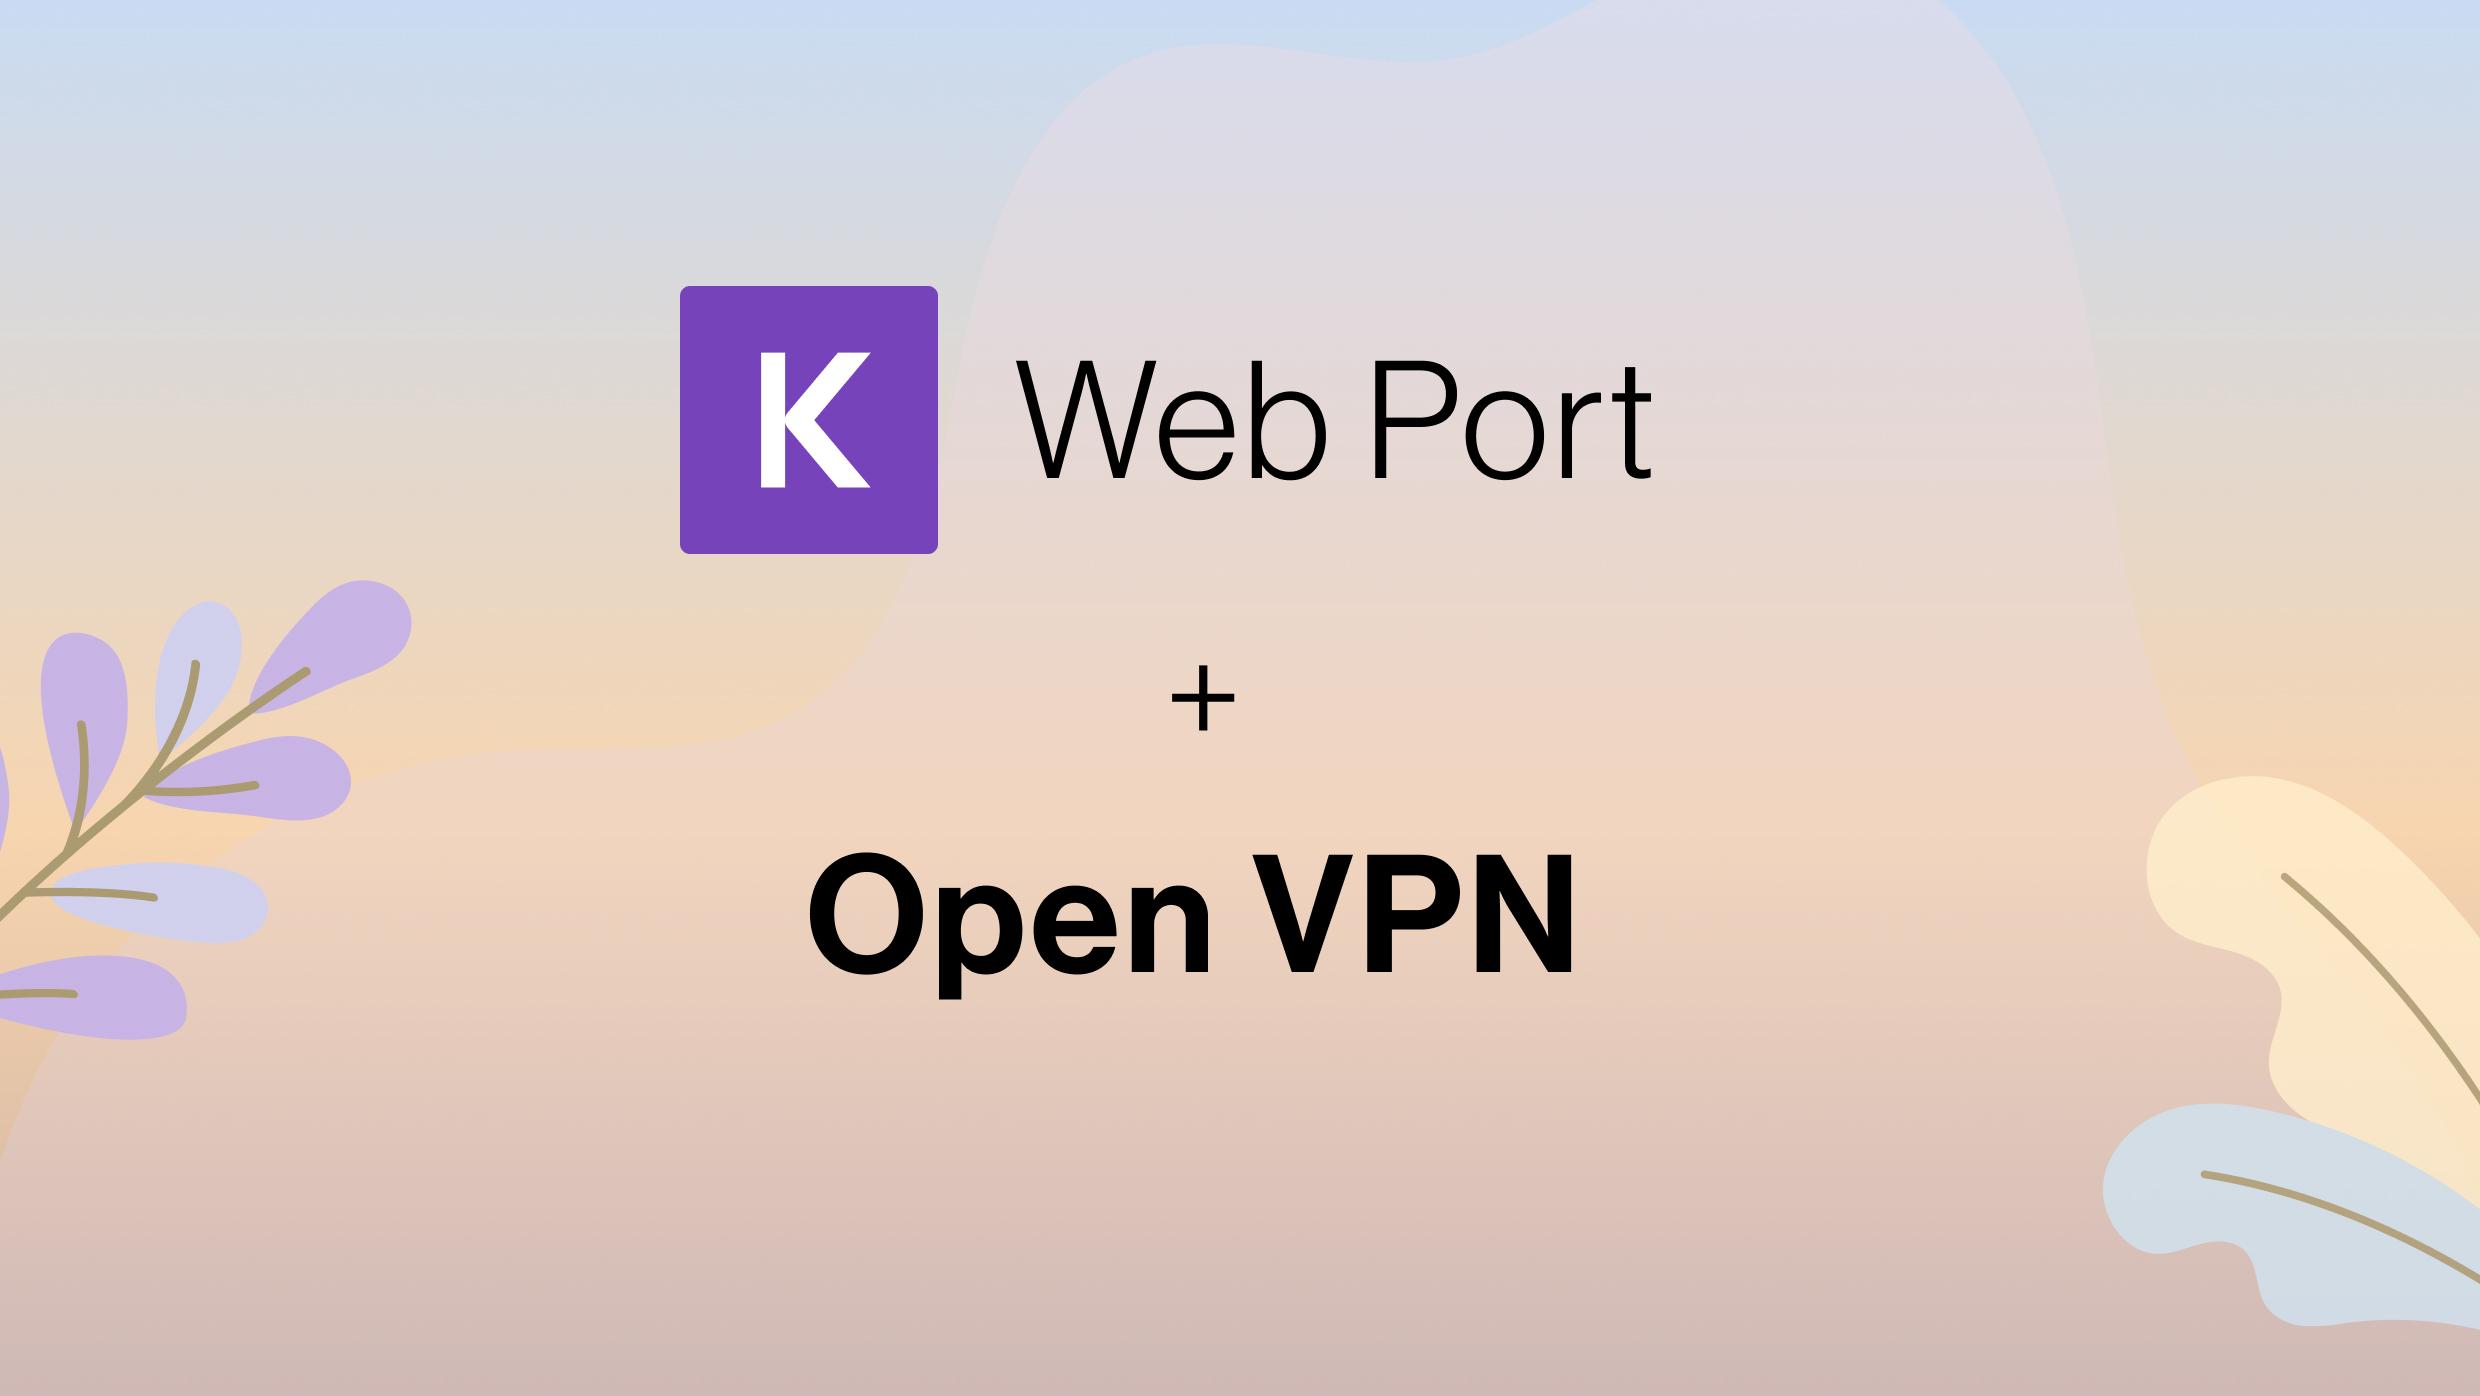 Web Port + Open VPN